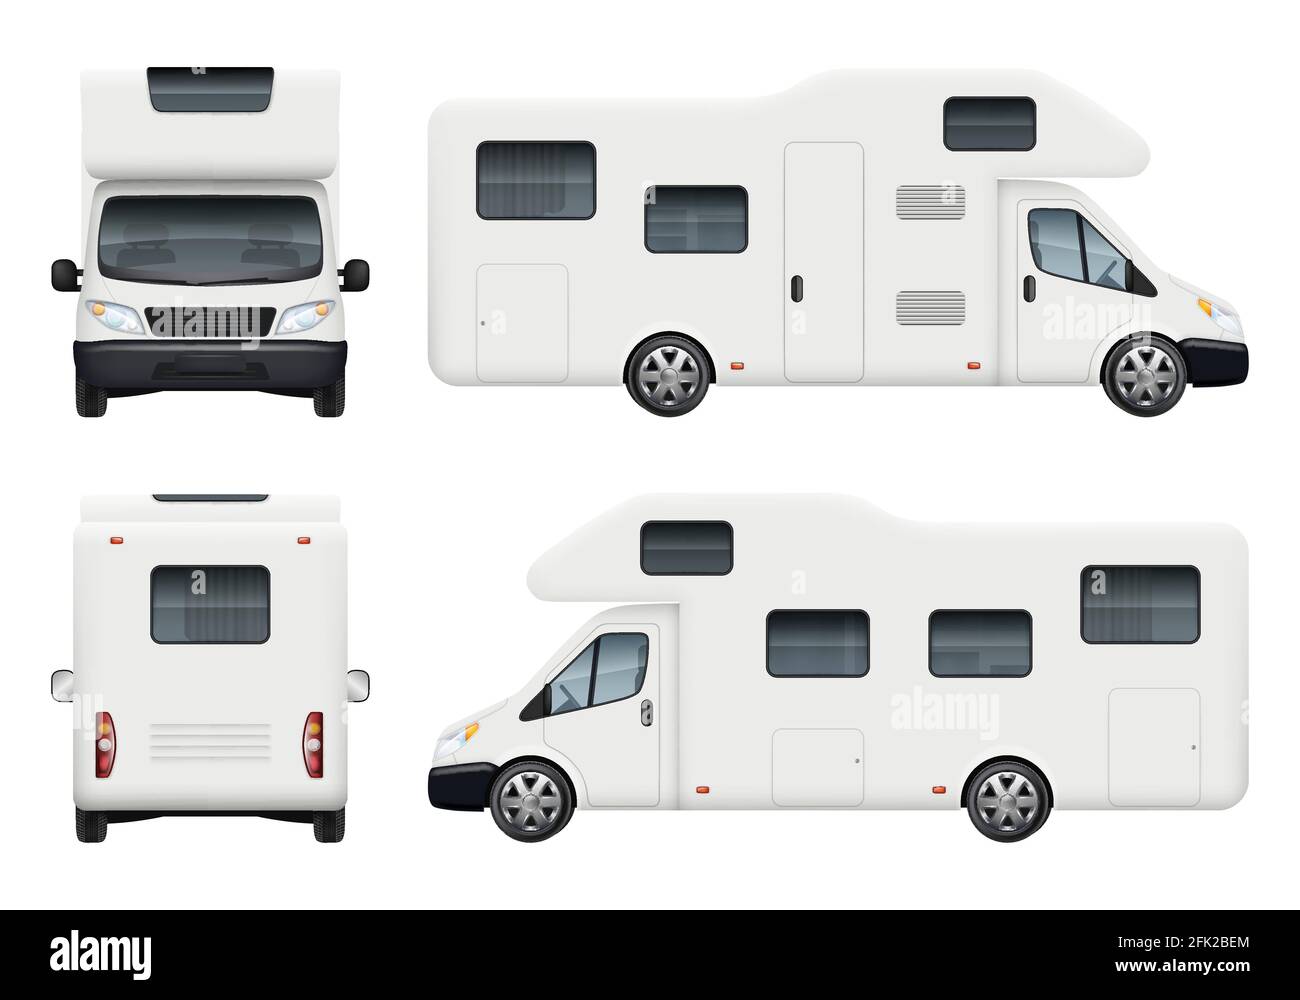 Wohnmobil. Realistische Familie Camping Anhänger für Reisen und haben einen Rest Auto hinten oben und vorne Seiten Ansicht Vektor-Set Stock Vektor